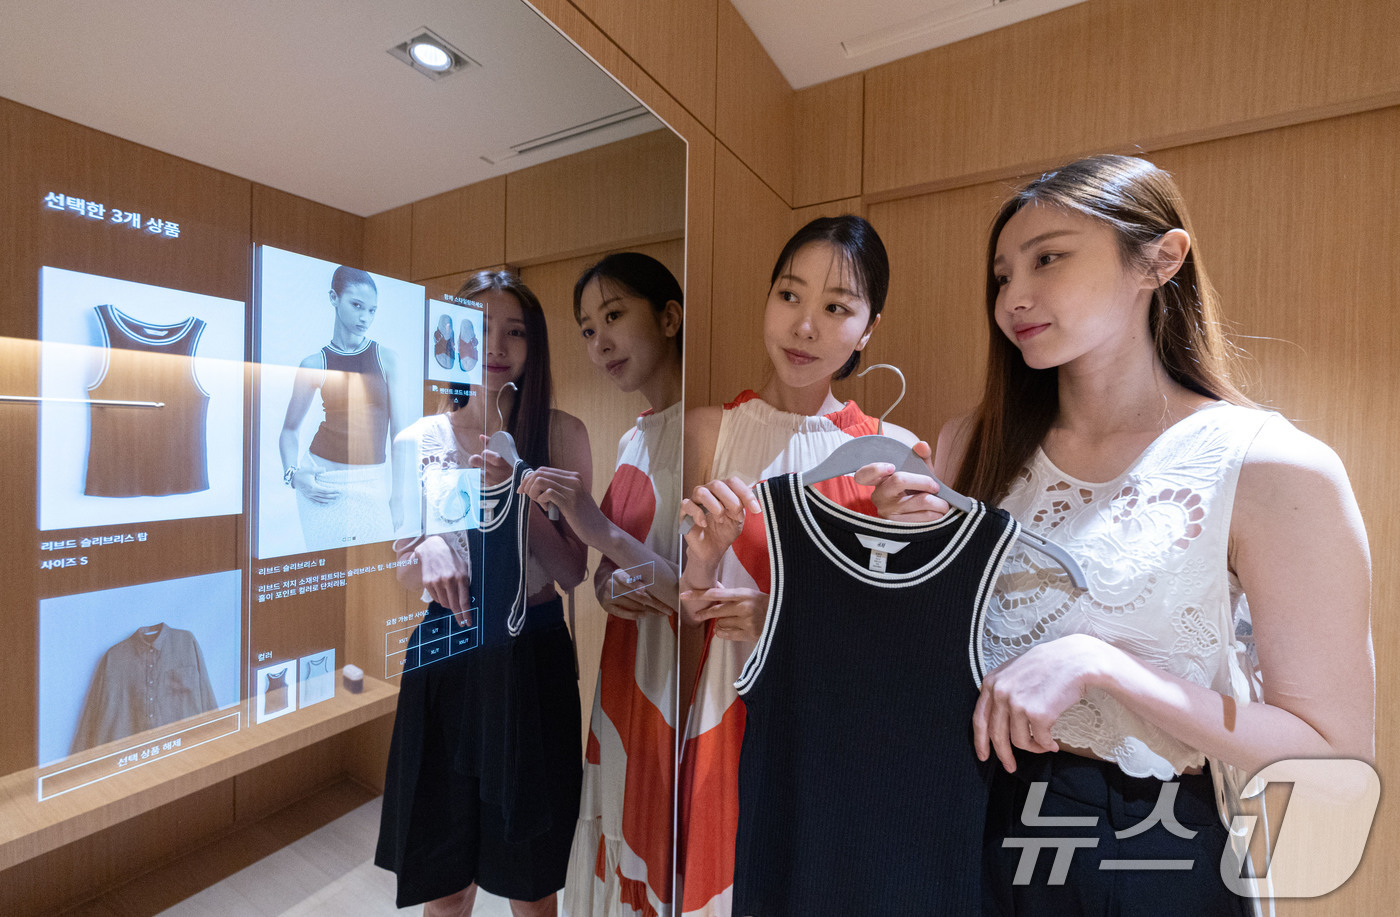 (서울=뉴스1) 이재명 기자 = 패션 브랜드 H&M은 국내 최초 글로벌 플래그십 스토어를 오픈했다.명동에 위치한 글로벌 플래그십 스토어는 지하 1층부터 지상 5층까지의 규모로 패션 …